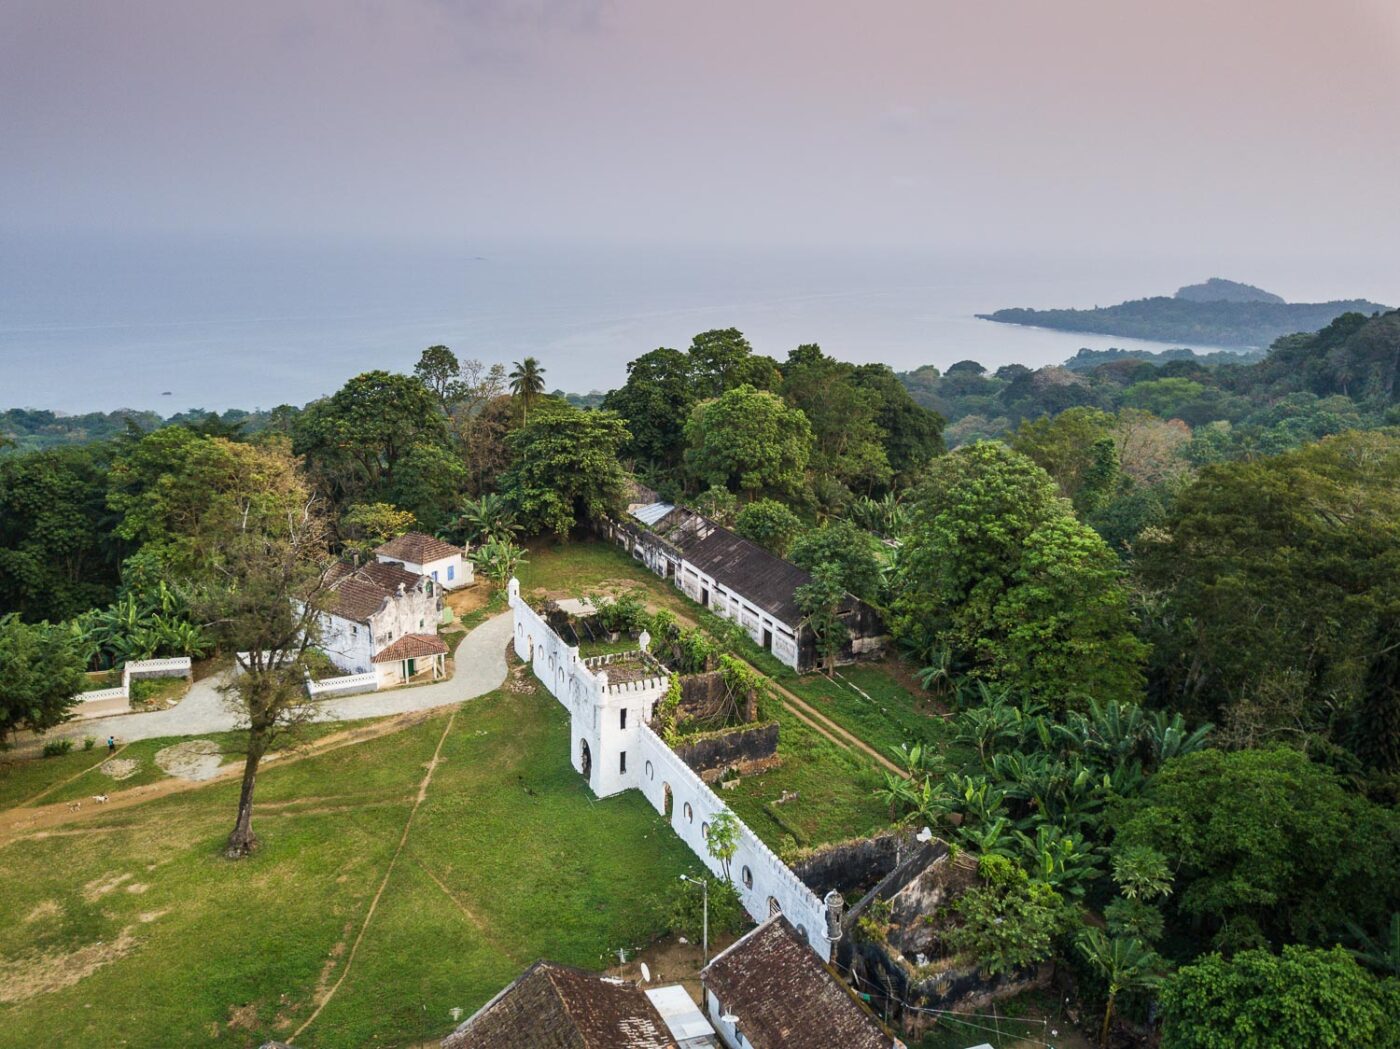 Reise in Sao Tome und Principe in Afrika. Aus der Luft blickt man auf das ehemalige, weisse Plantagenhaus des heutigen Hotels Roca Sundy herab. In der Ferne liegt hinter dem Urwald das Meer.